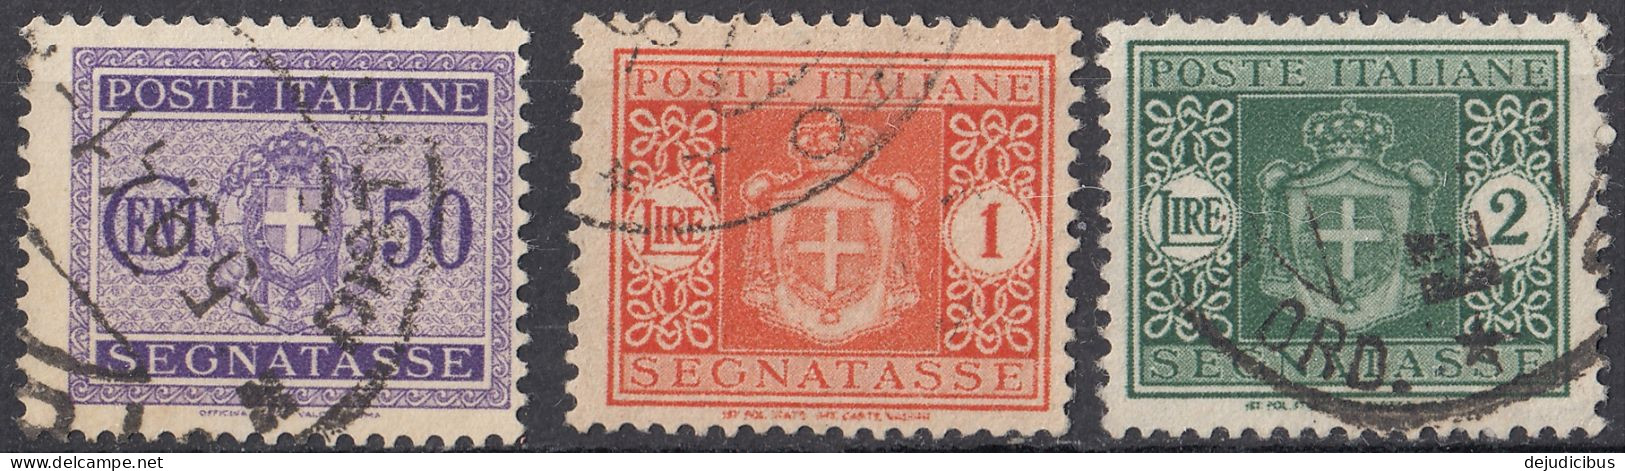 ITALIA - 1934 - Segnatasse -  Lotto Di 3 Valori Usati: Yvert  34, 36 E 37. - Impuestos